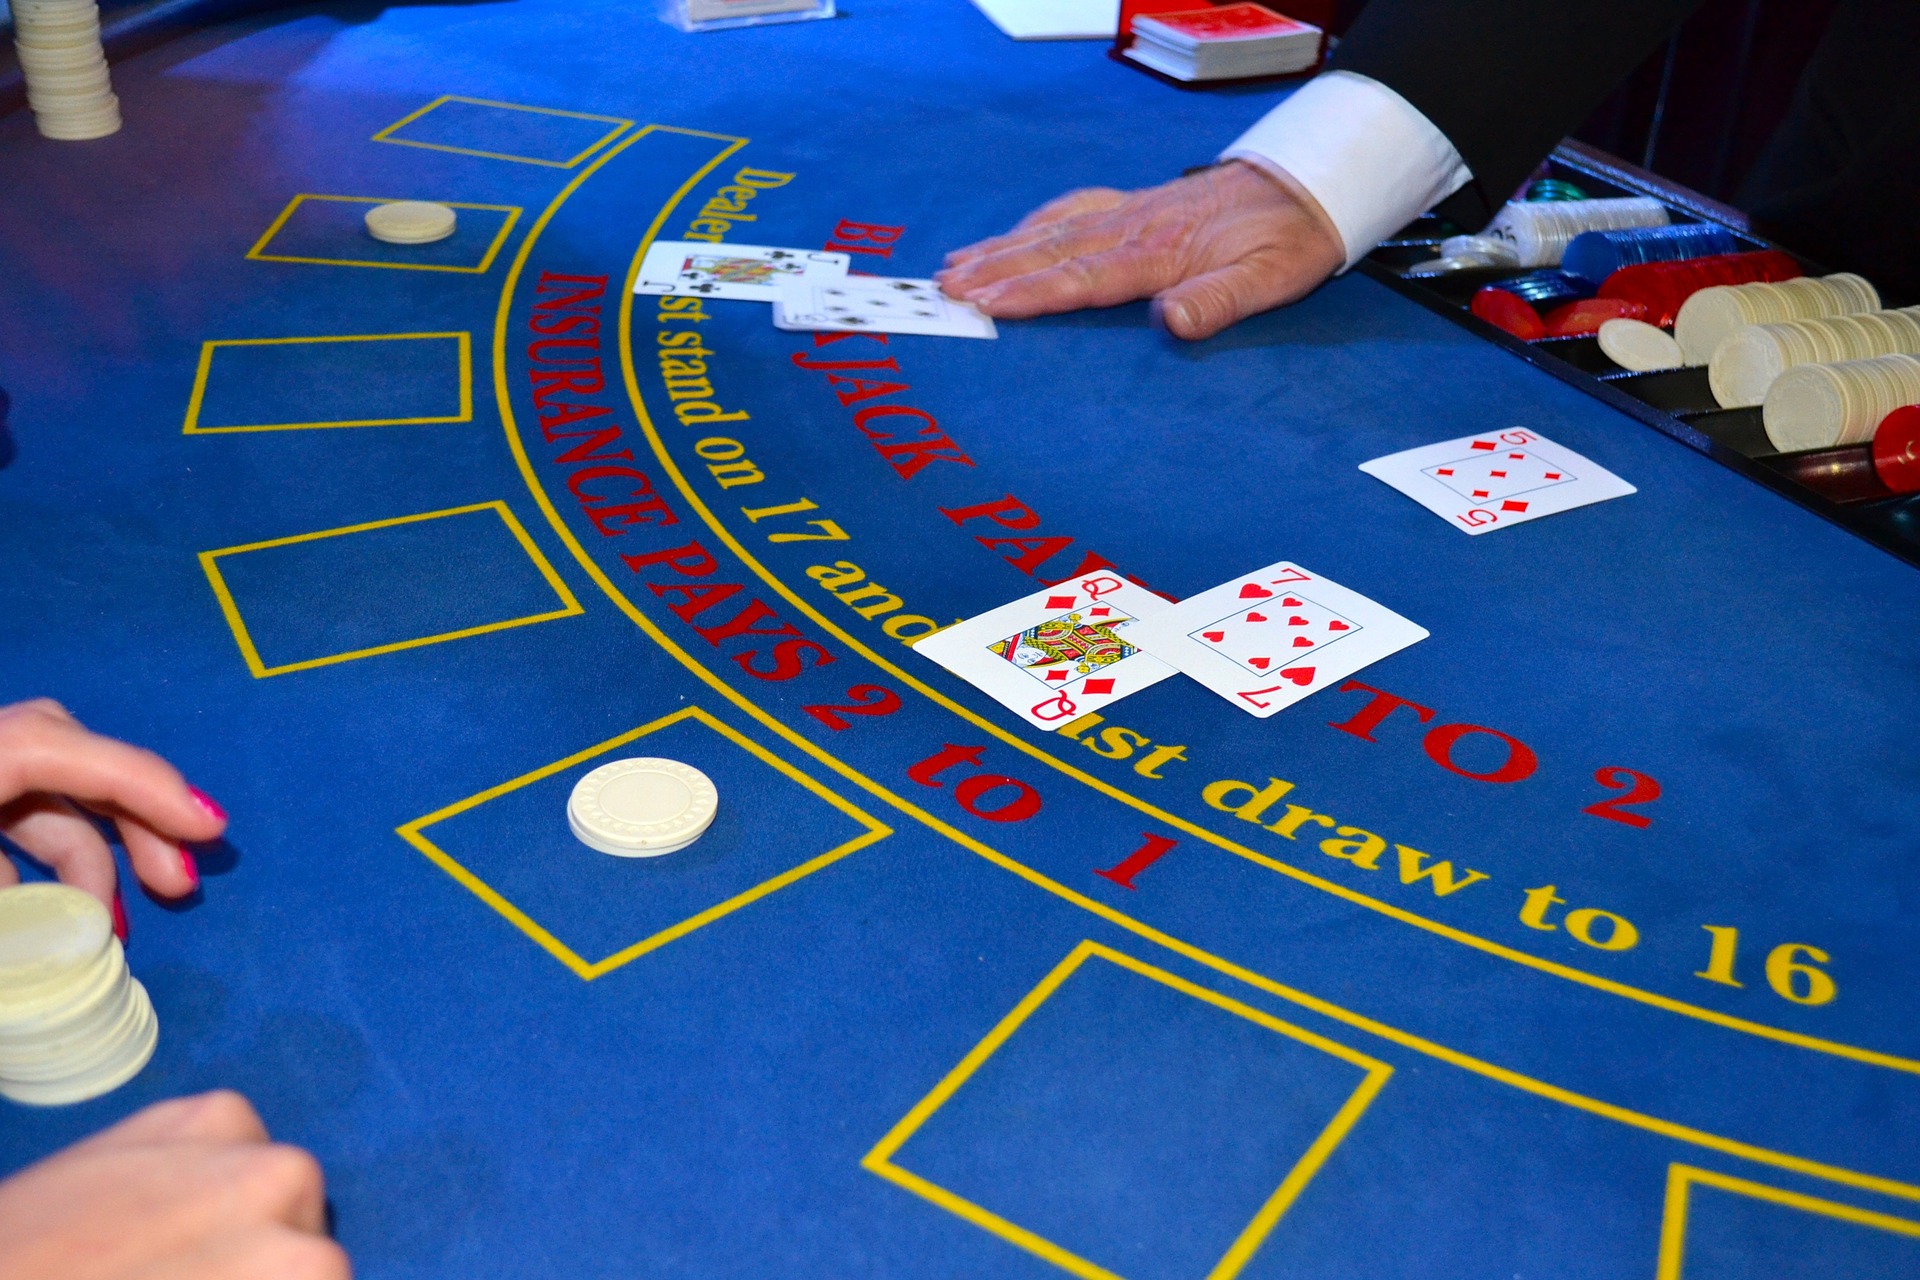 Situation de jeu à la table de blackjack au Casino avec croupier et joueur et cartes à jouer.